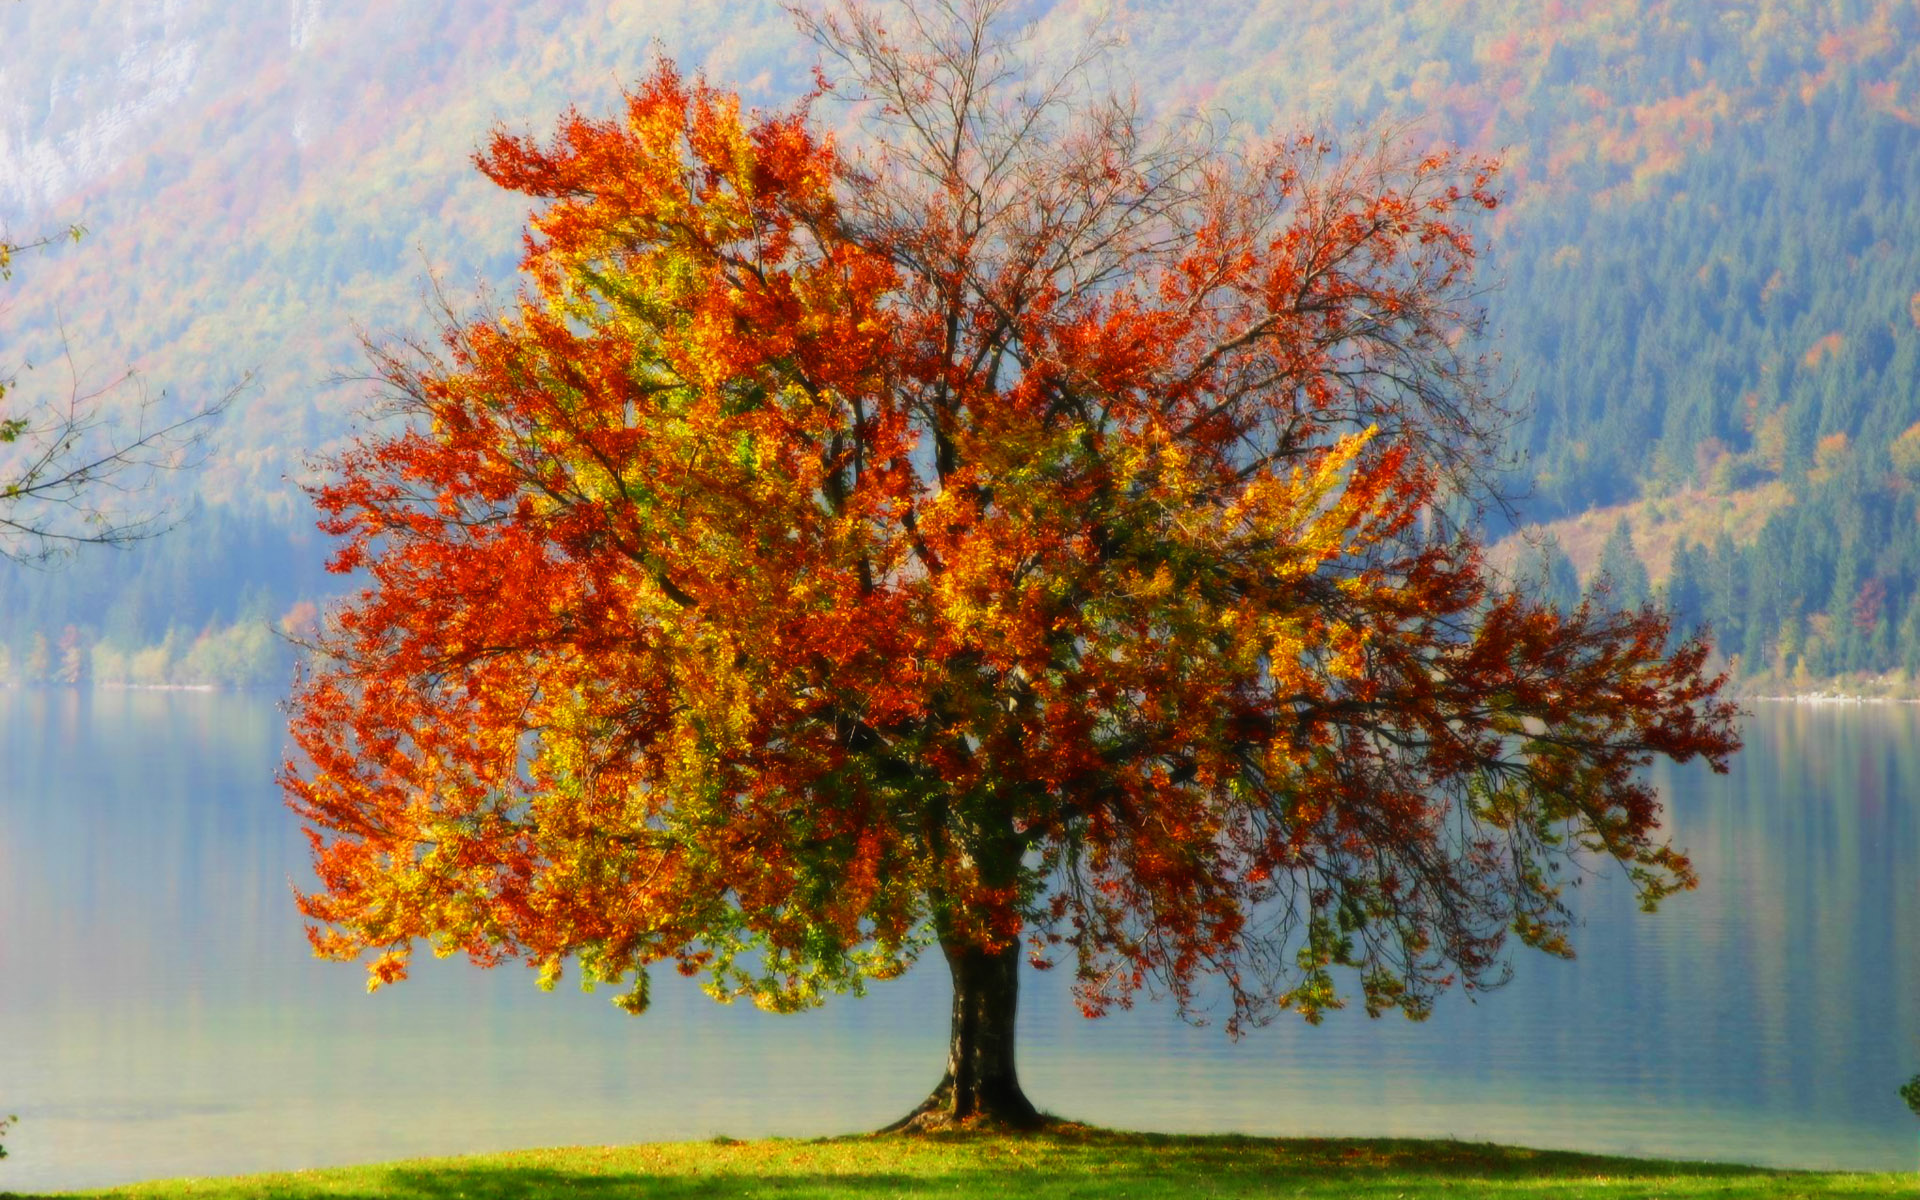 Tree in autumn photo